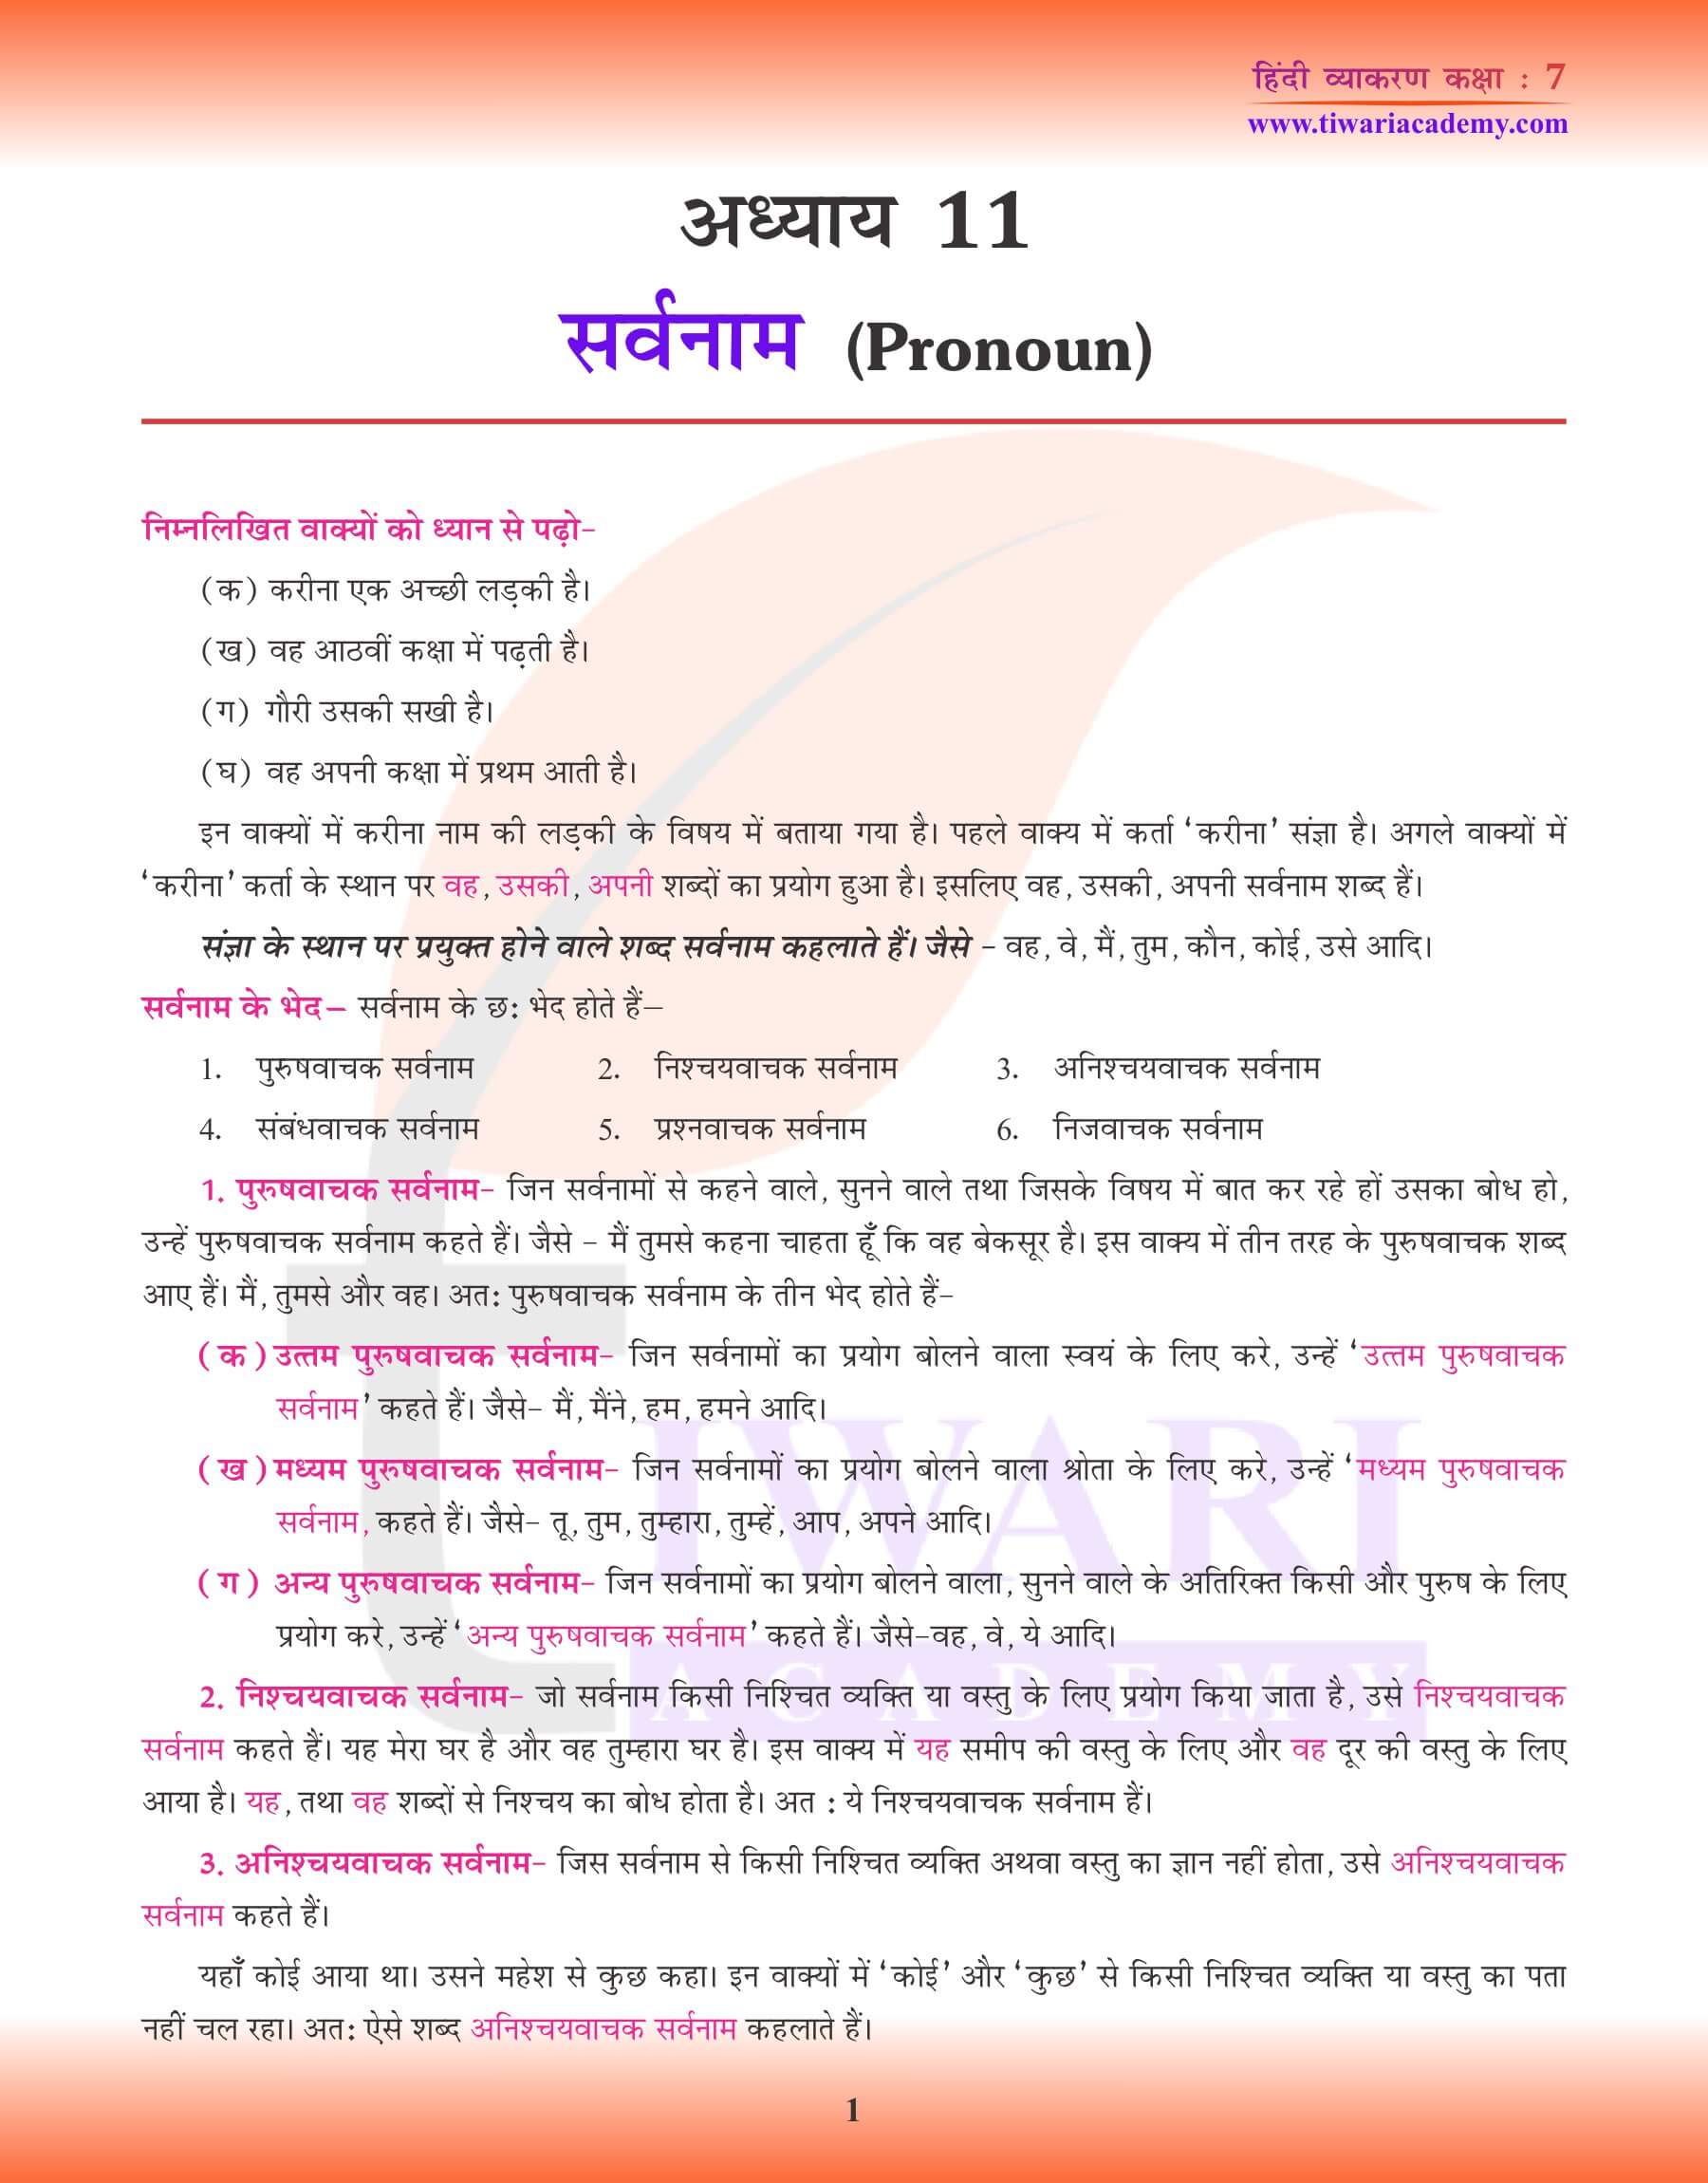 कक्षा 7 हिंदी व्याकरण अध्याय 11